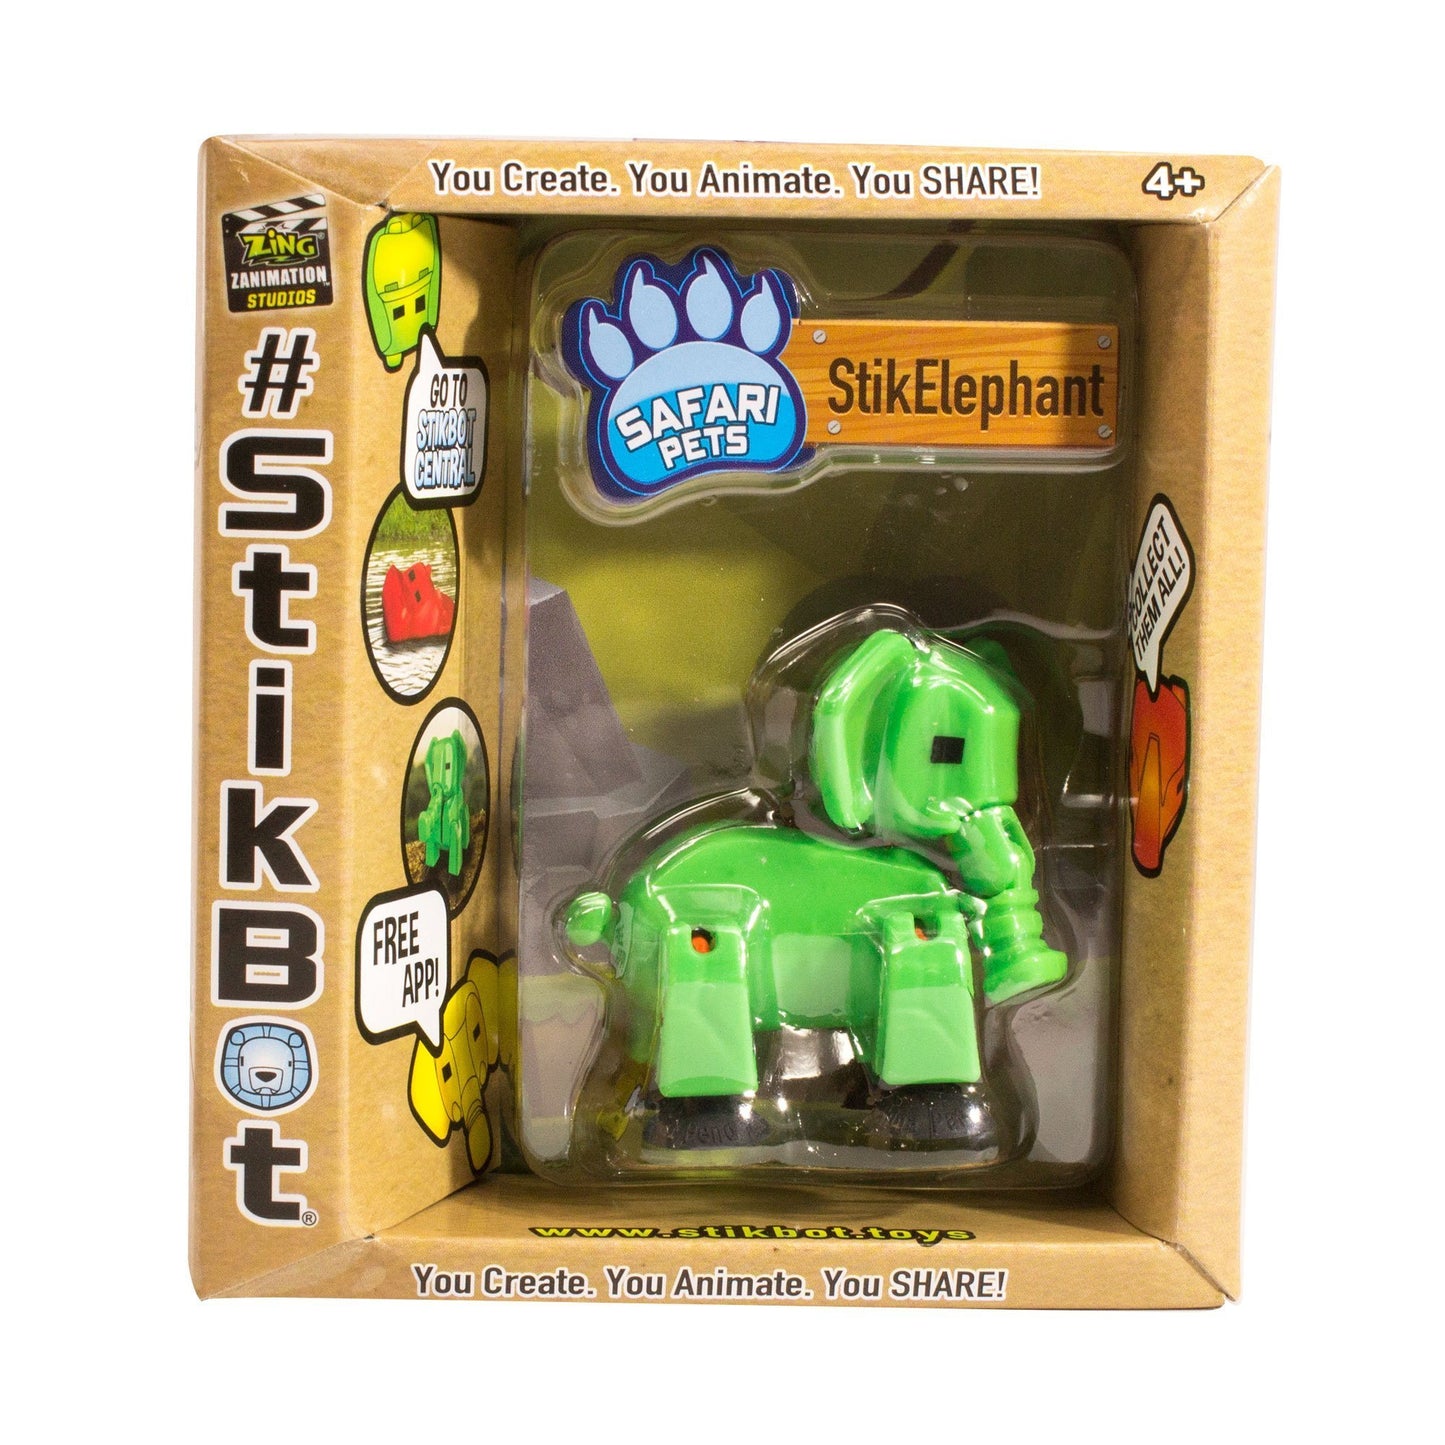 Stikbot safari voi con-xanh lá cây